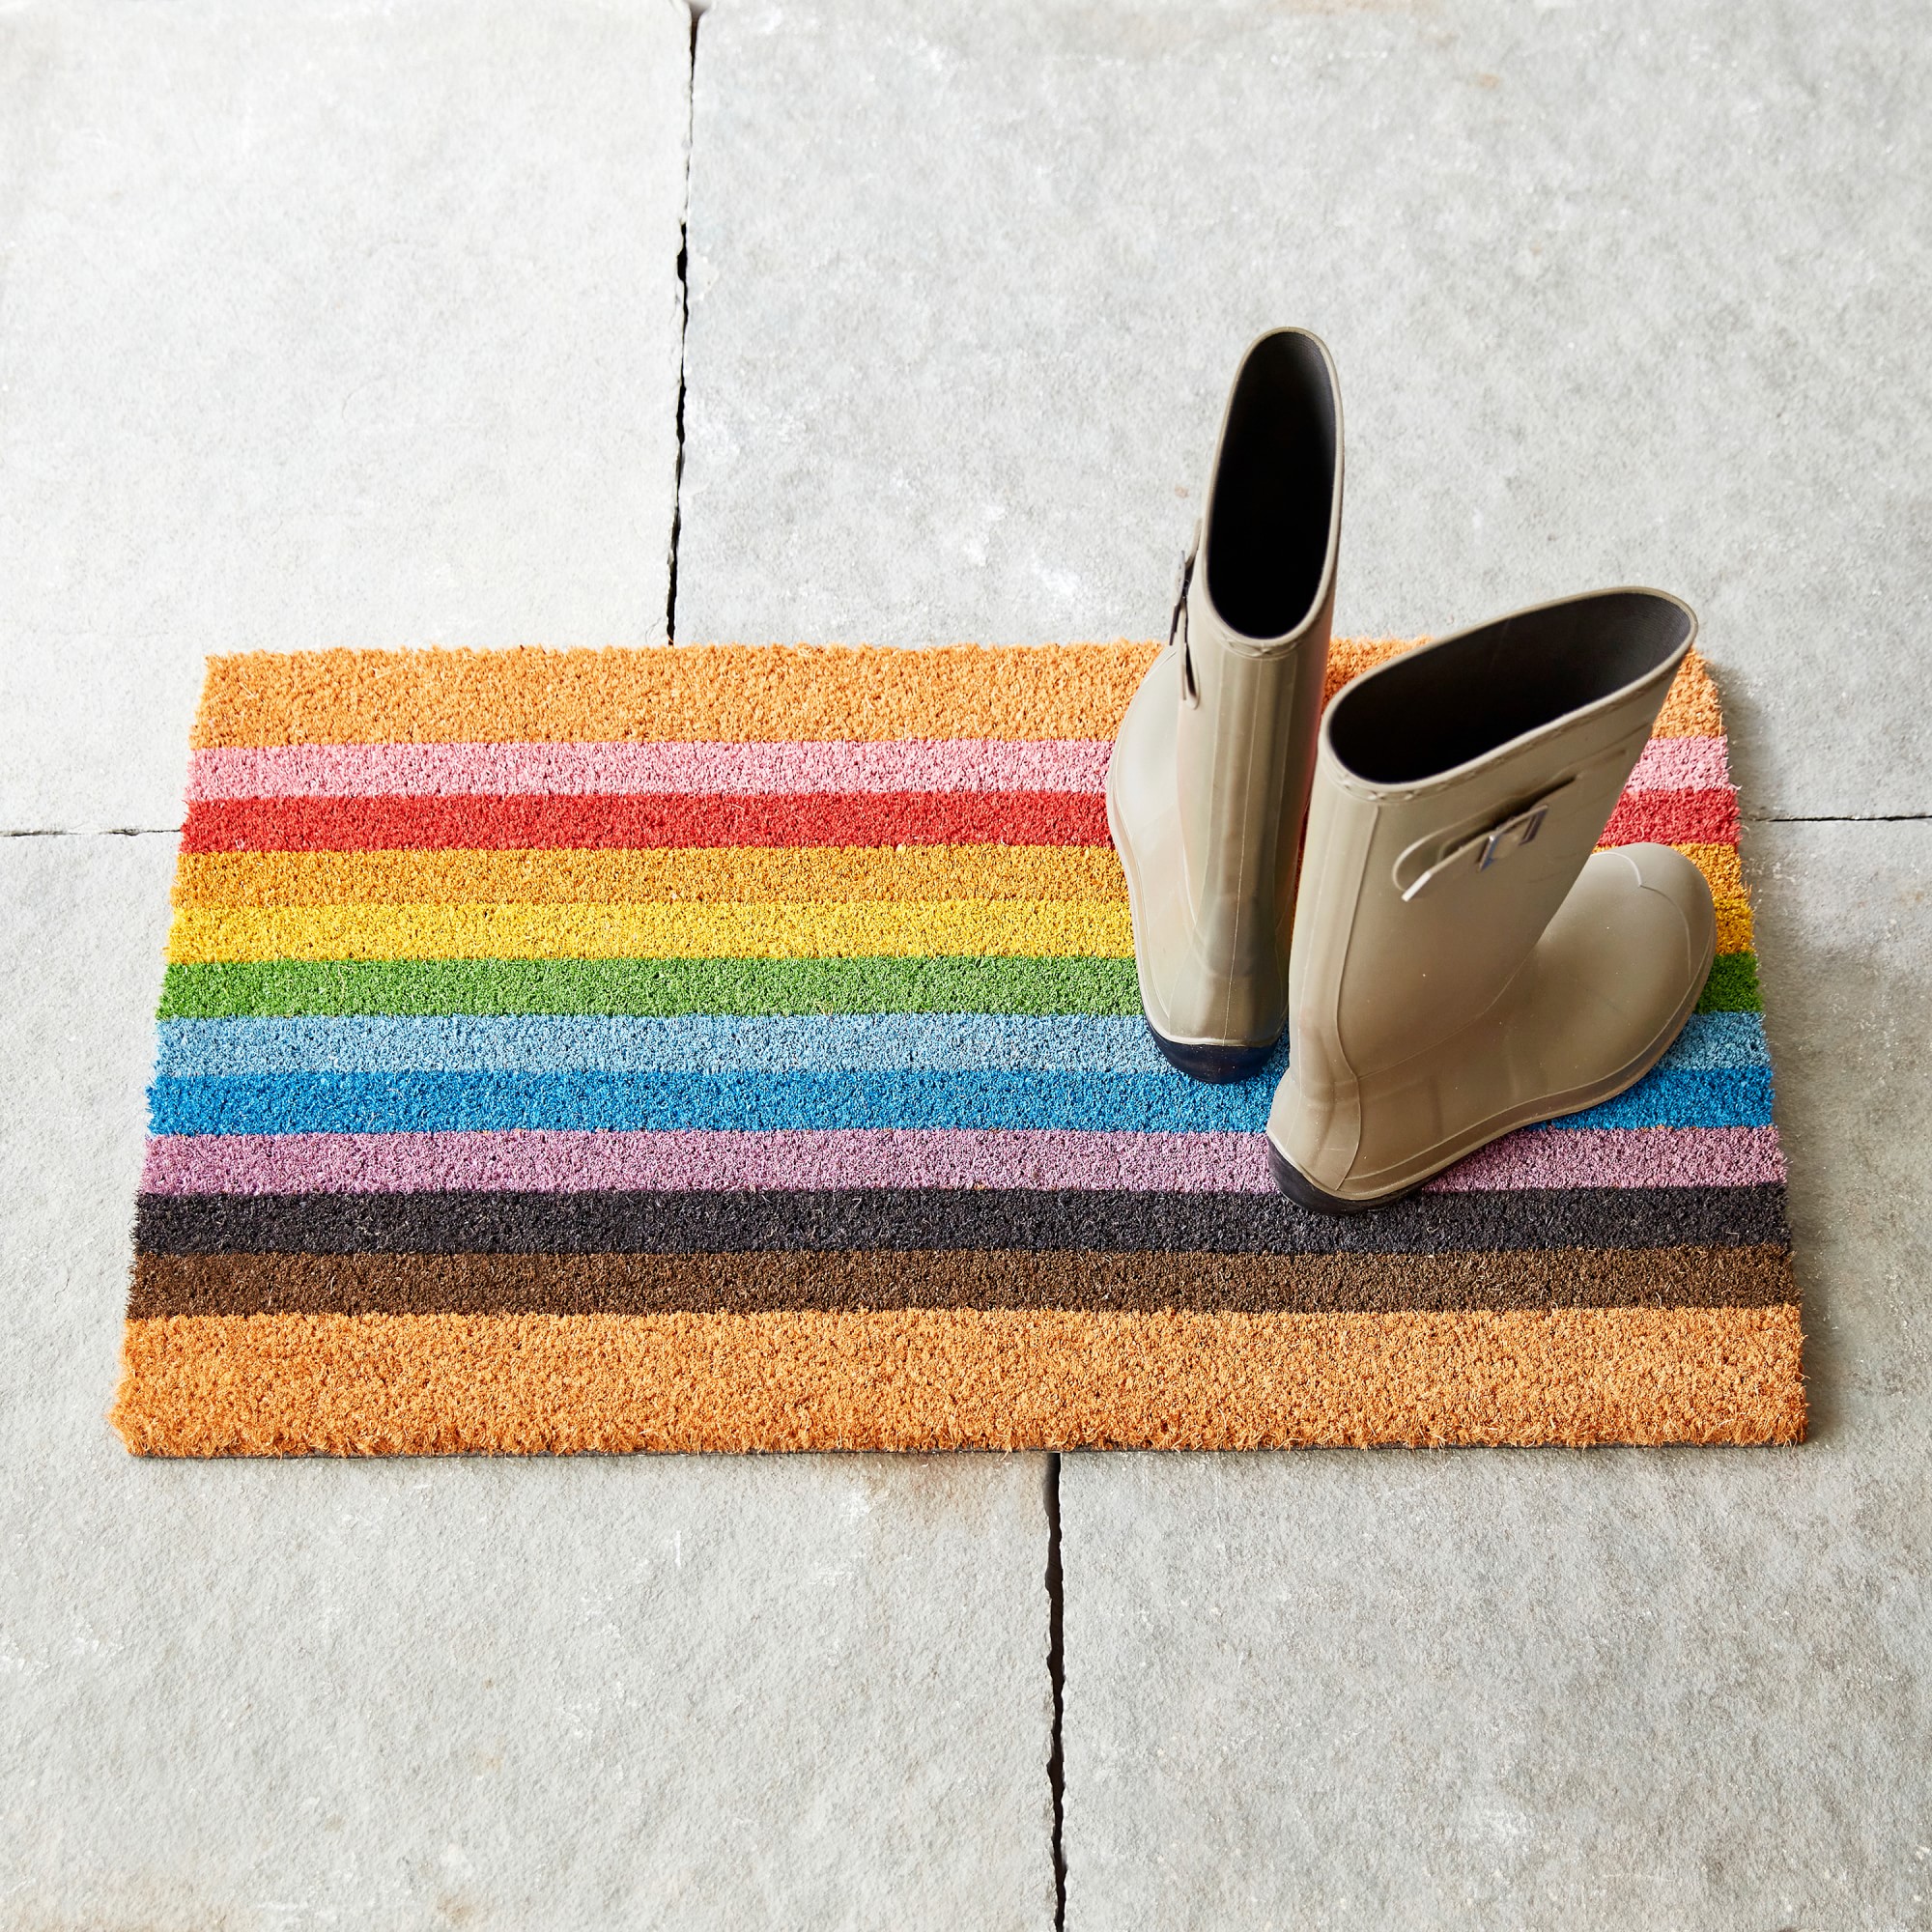 The Trevor Project Pride Doormat